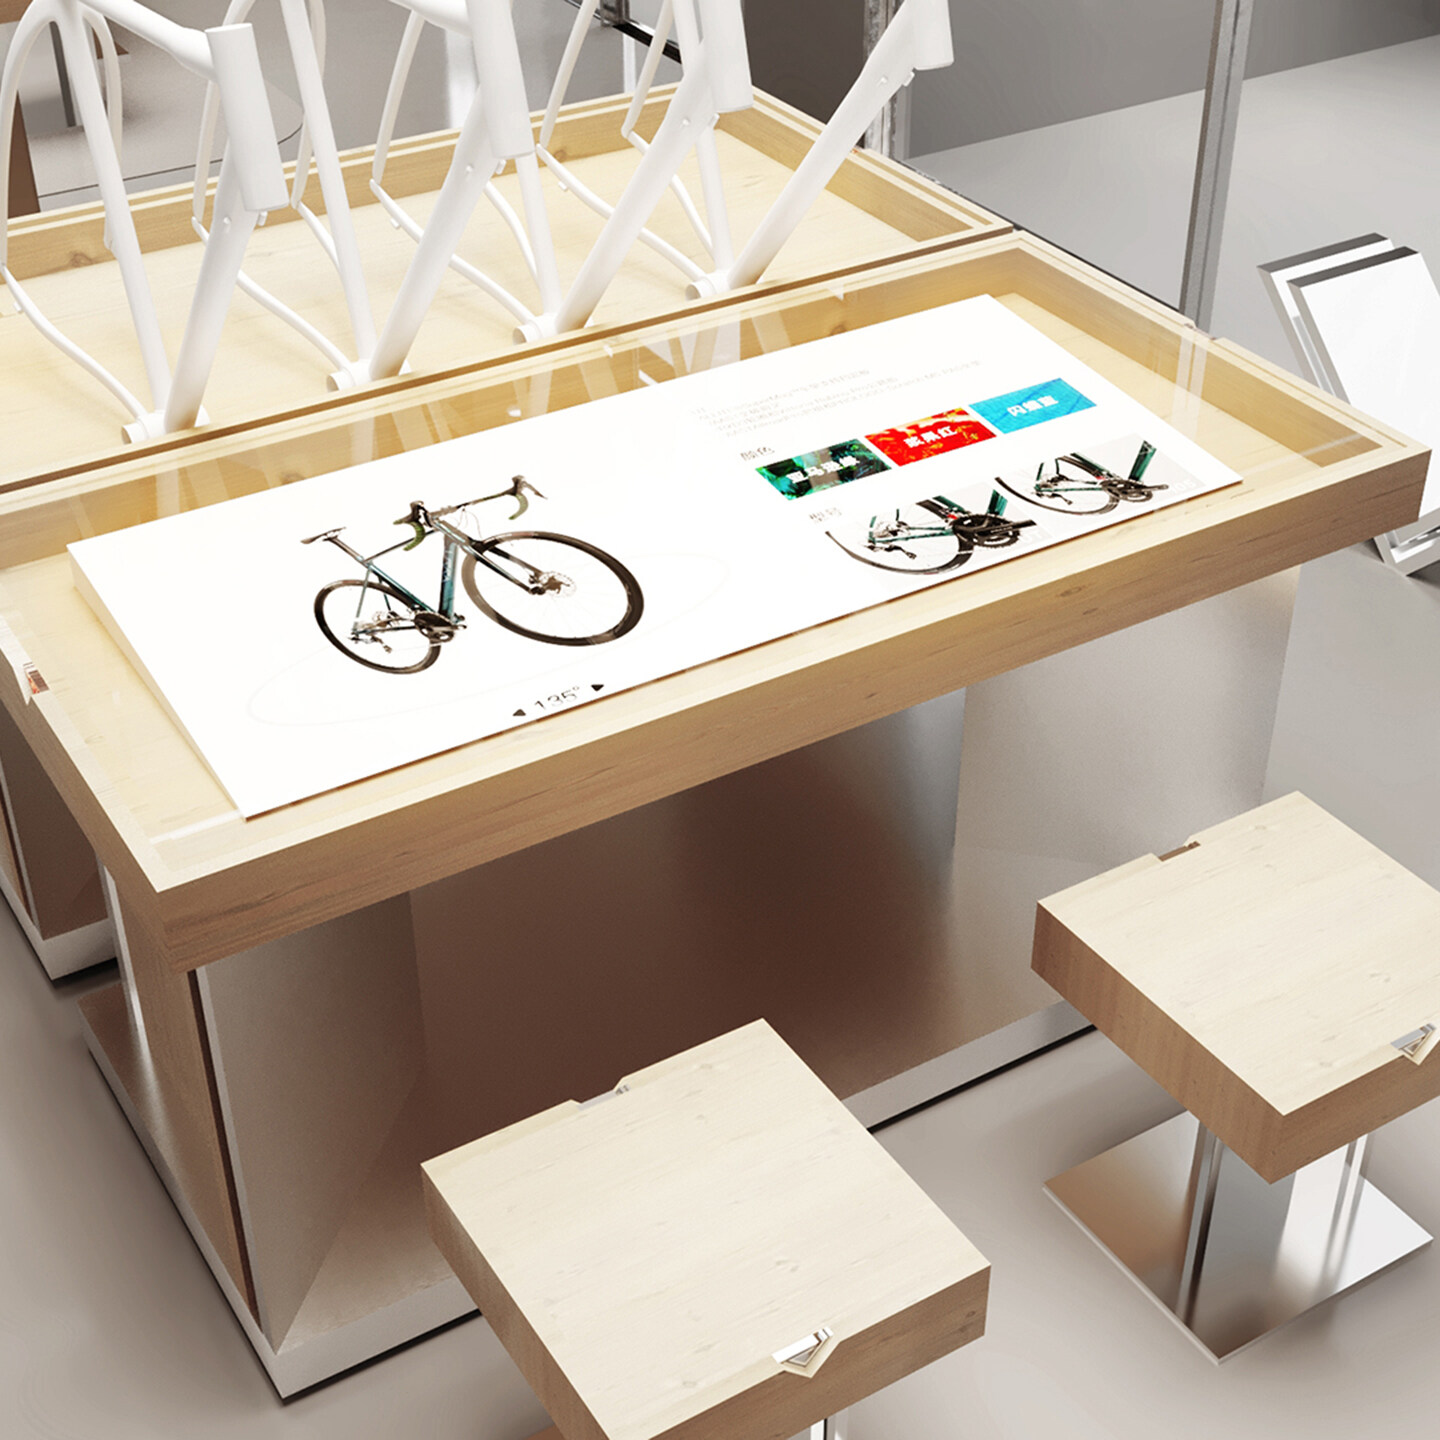 自行车零售空间设计-VAAST自行车空间设计